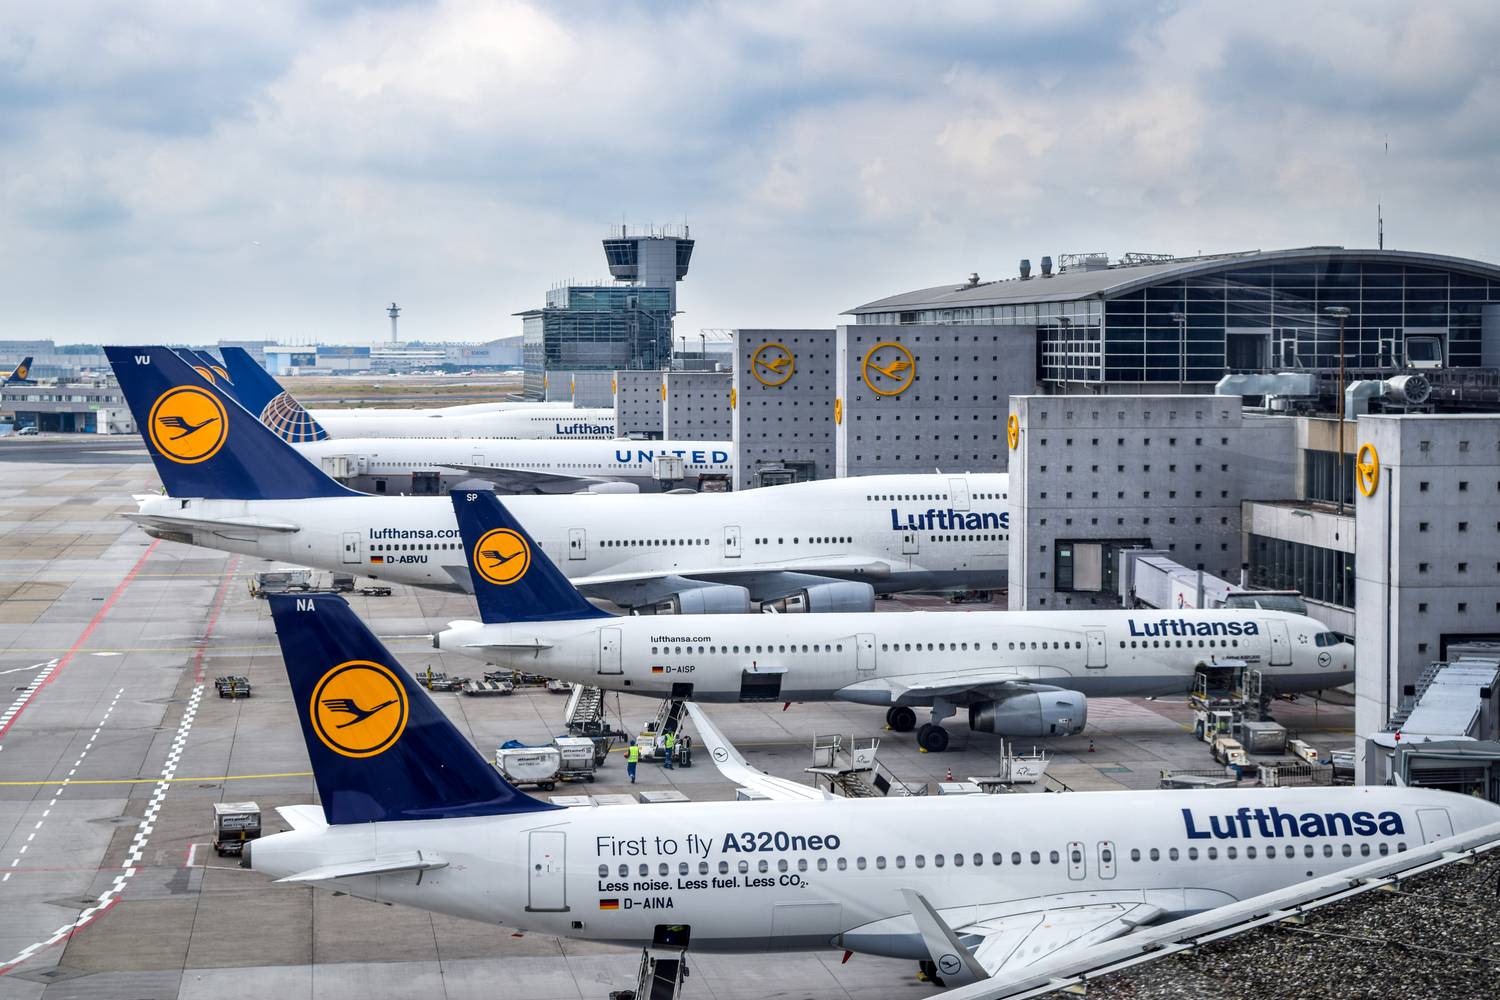 Huelgas en Lufthansa - Foro Aviones, Aeropuertos y Líneas Aéreas